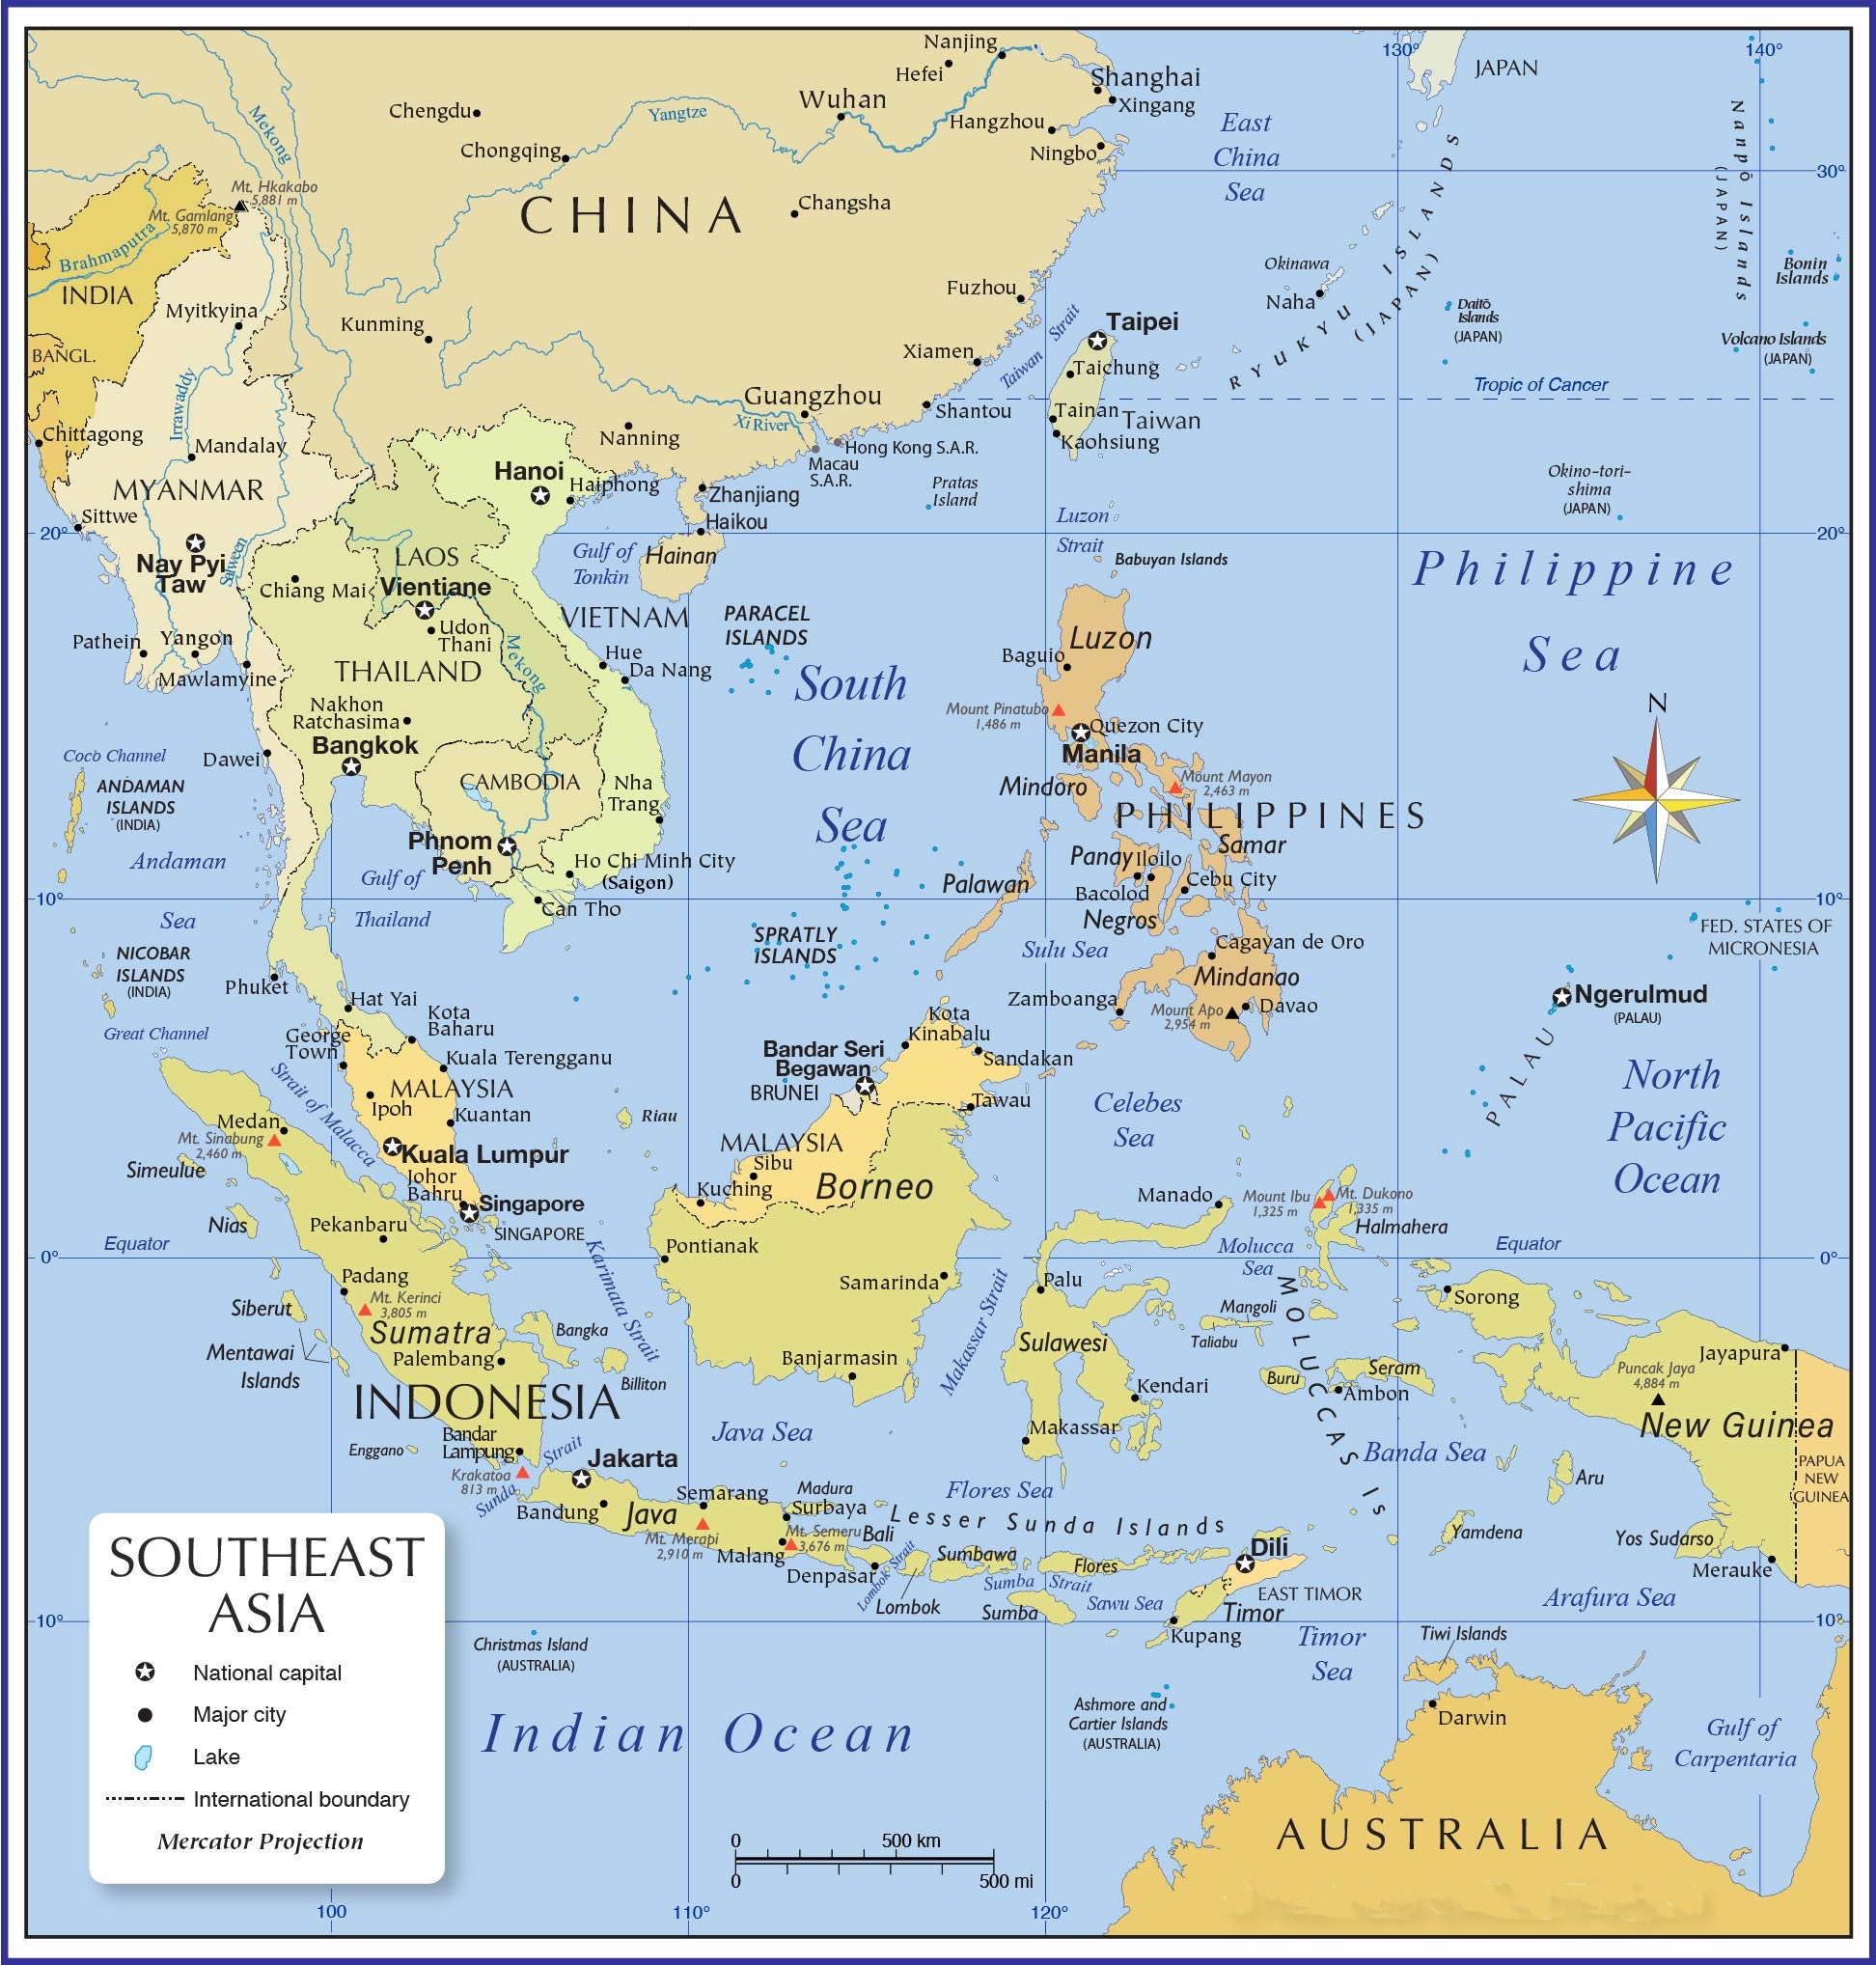 Tình hình Đông Nam Á sau Chiến tranh Thế giới I 2024 sẽ giúp bạn hiểu rõ hơn về sự ảnh hưởng của chiến tranh lên khu vực. Tuy nhiên, những nơi này đã nhanh chóng hồi sinh và trở thành các quốc gia phát triển vượt bậc. Hãy khám phá những thay đổi kì diệu trên bản đồ Đông Nam Á